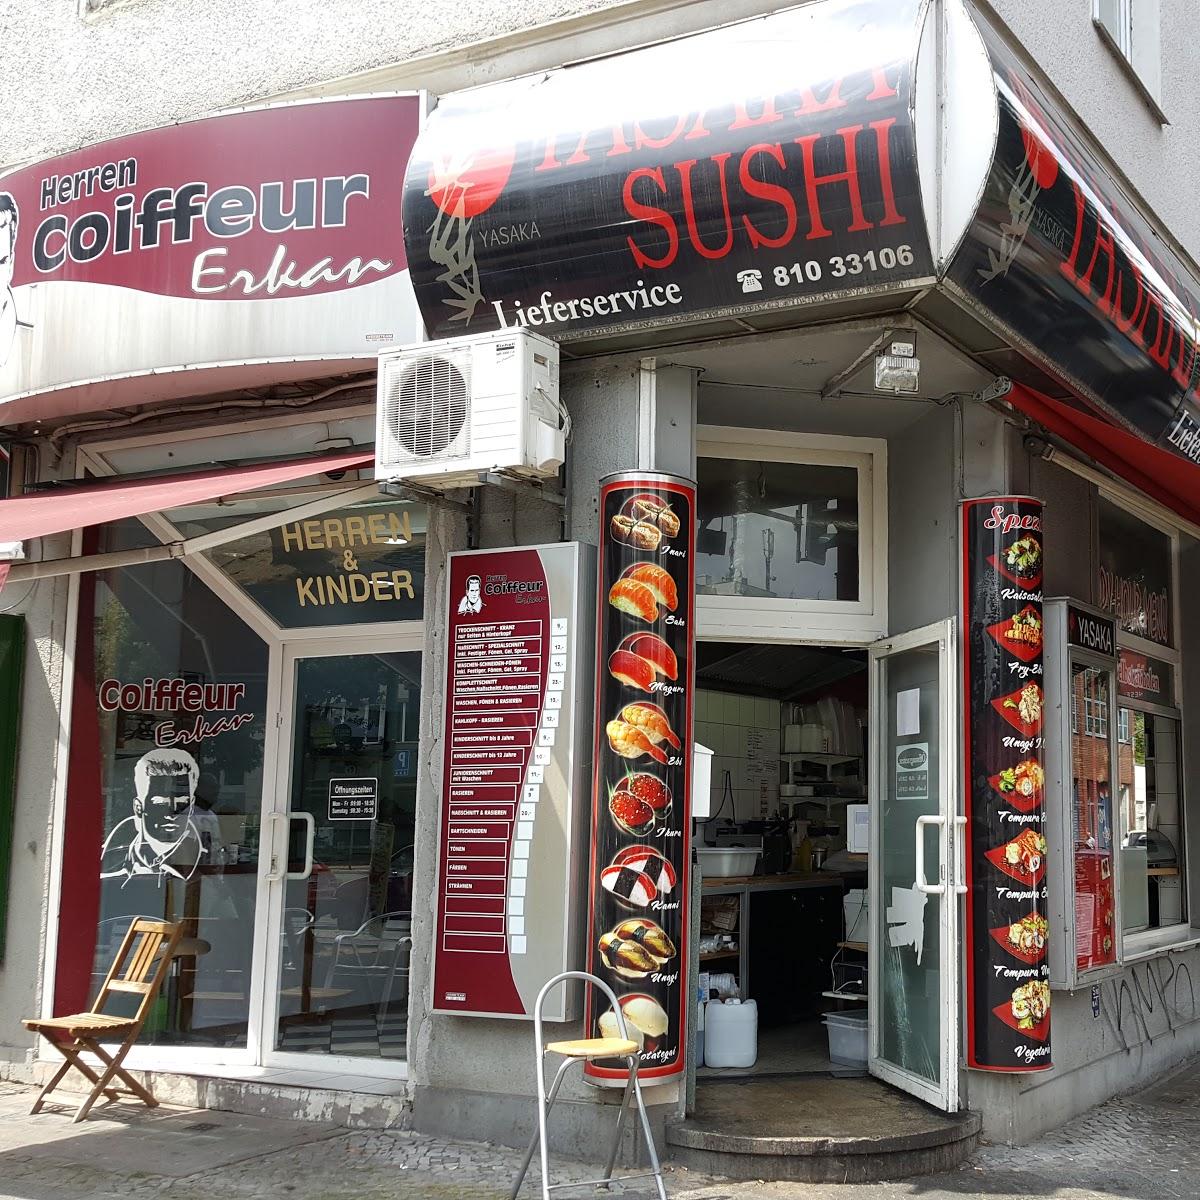 Restaurant "Yasaka-Sushi" in Berlin